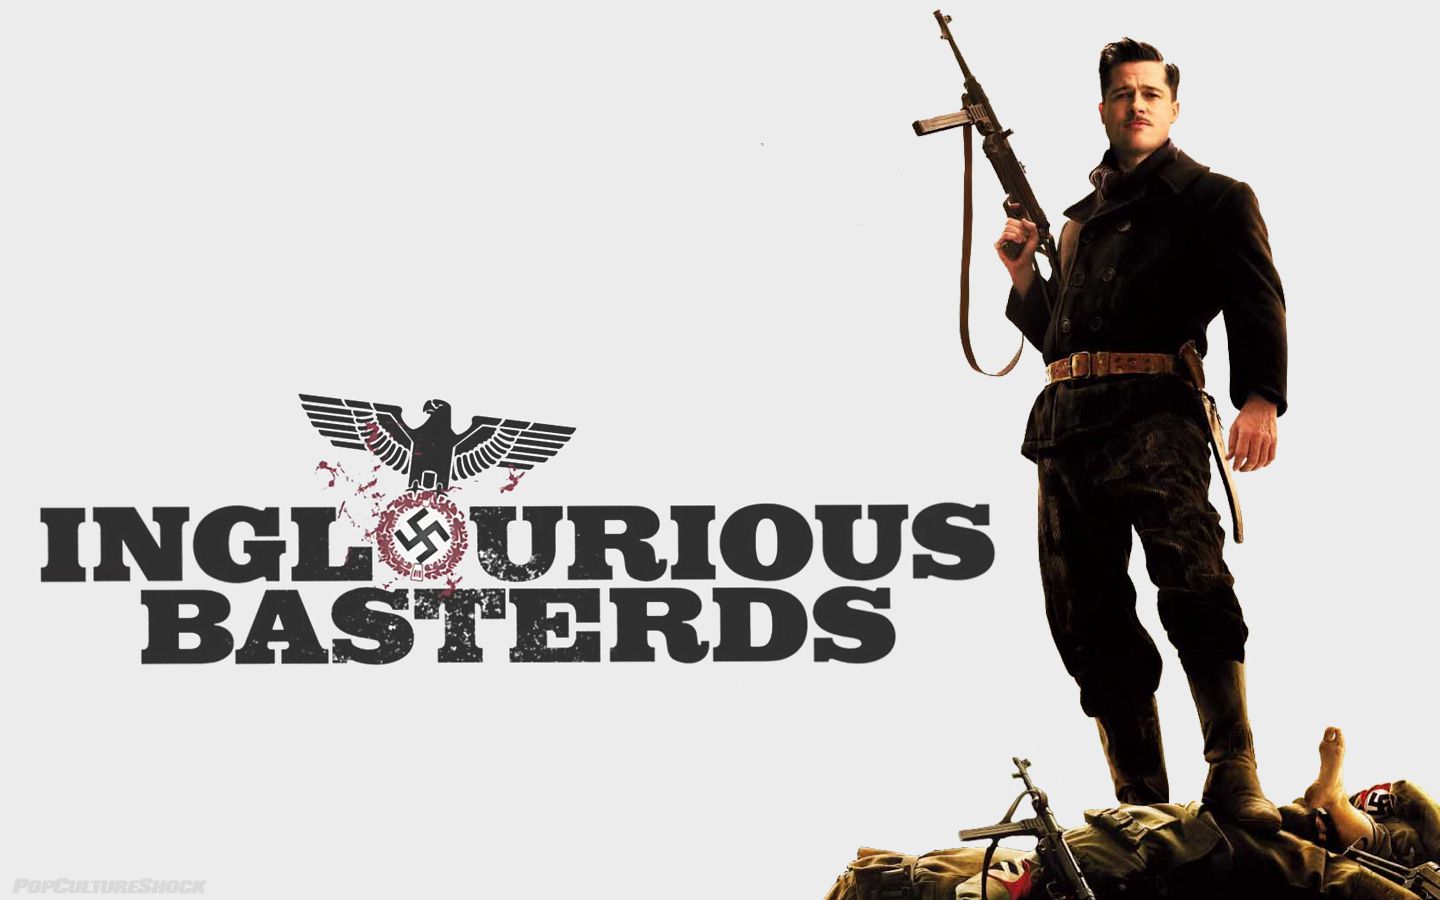 الكشف عن القصة الحقيقية لفيلم « الأوغاد المجهولين » “Inglourious Basterds”